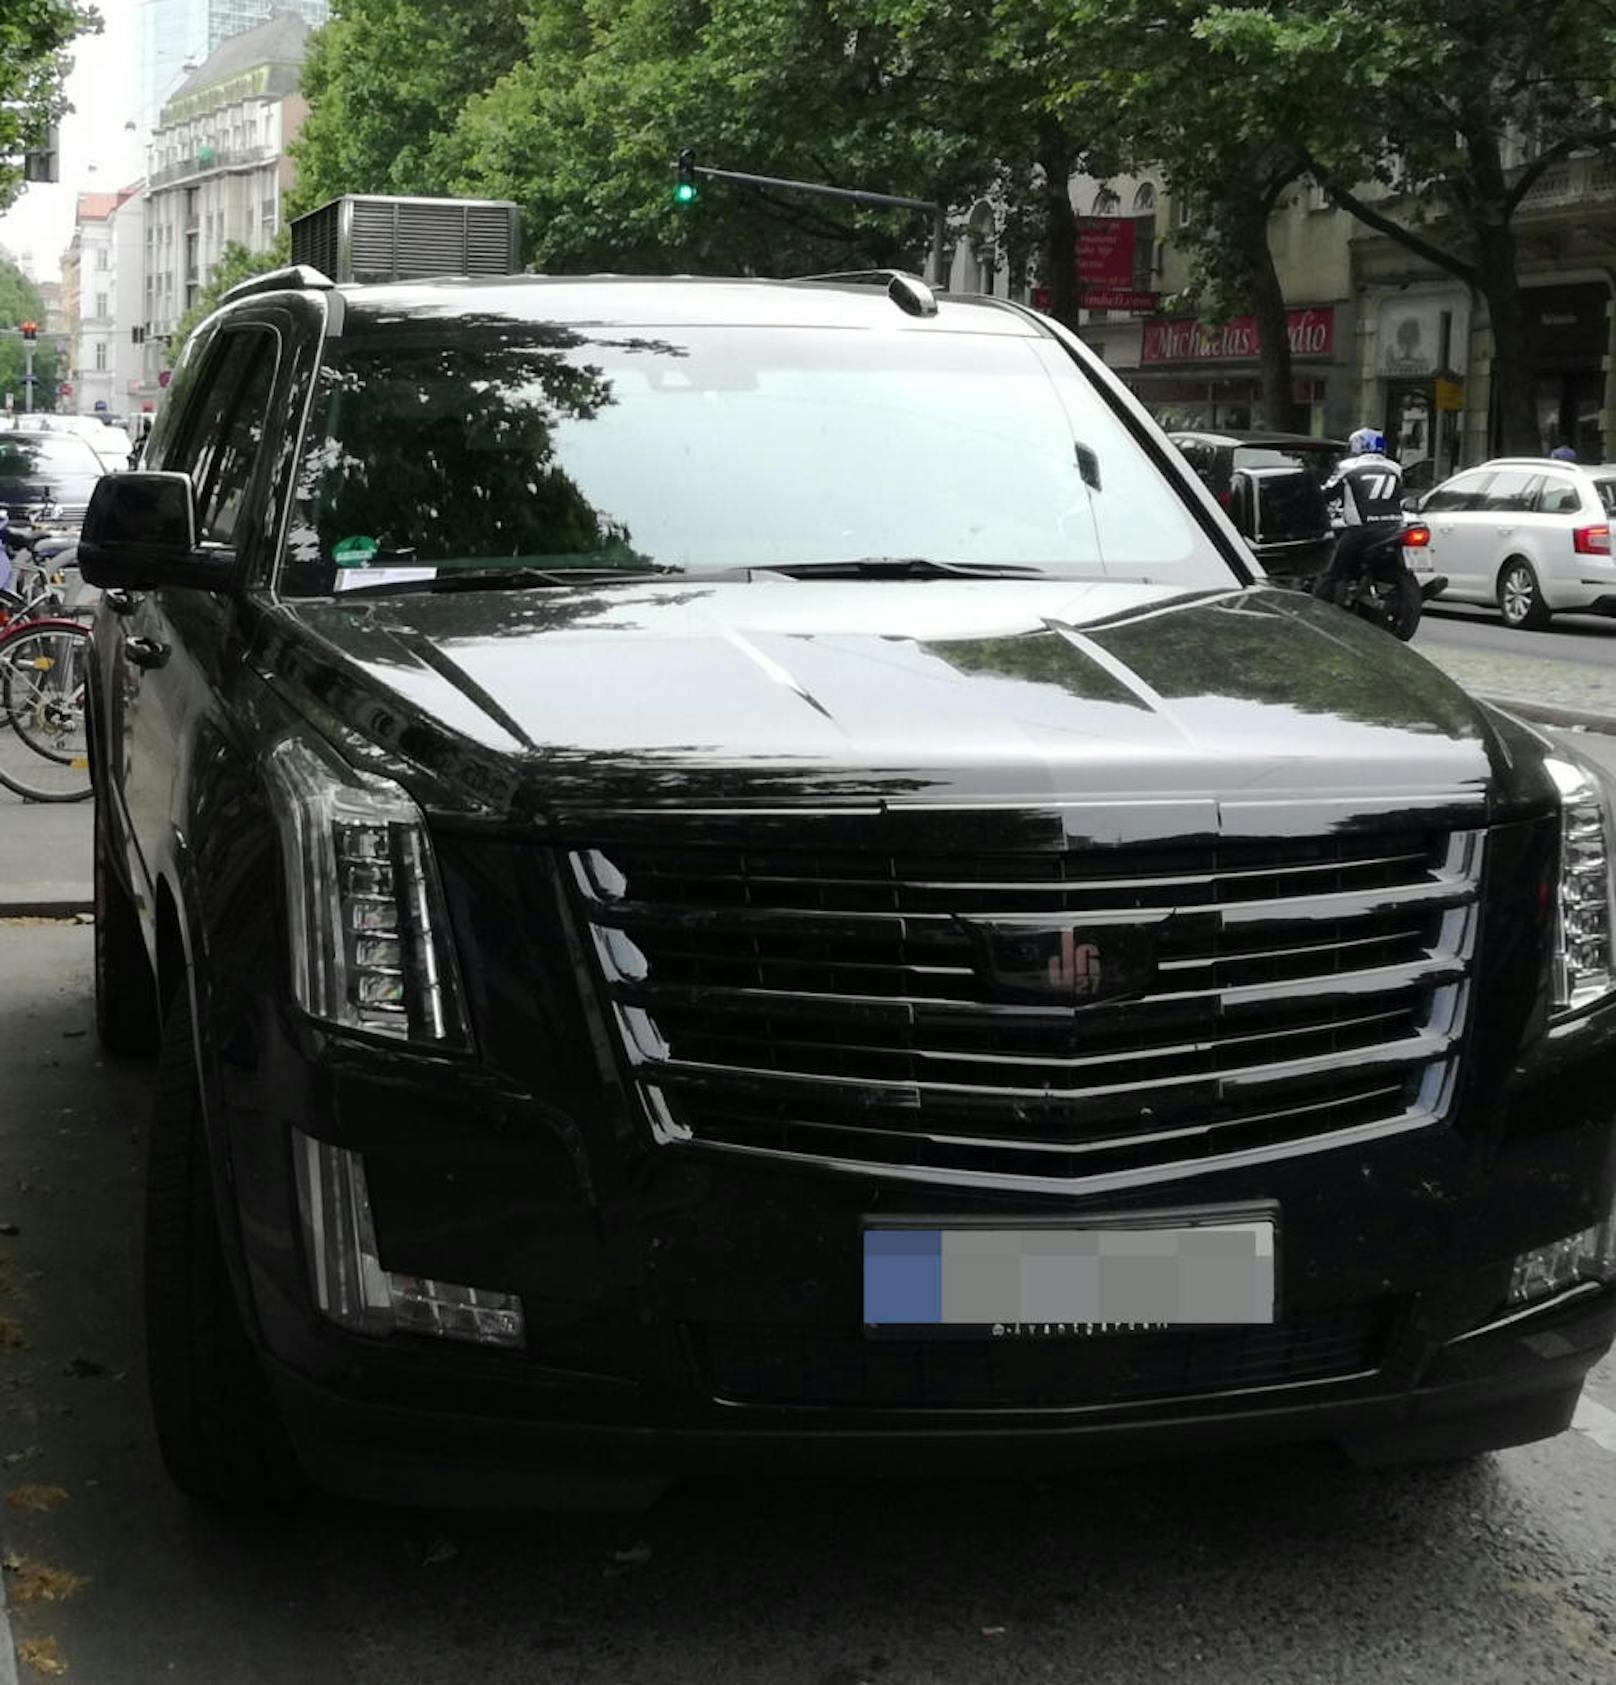 David Alaba stellte seinen neuen Cadillac Escalade im Parkverbot ab - und kassierte einen Strafzettel.